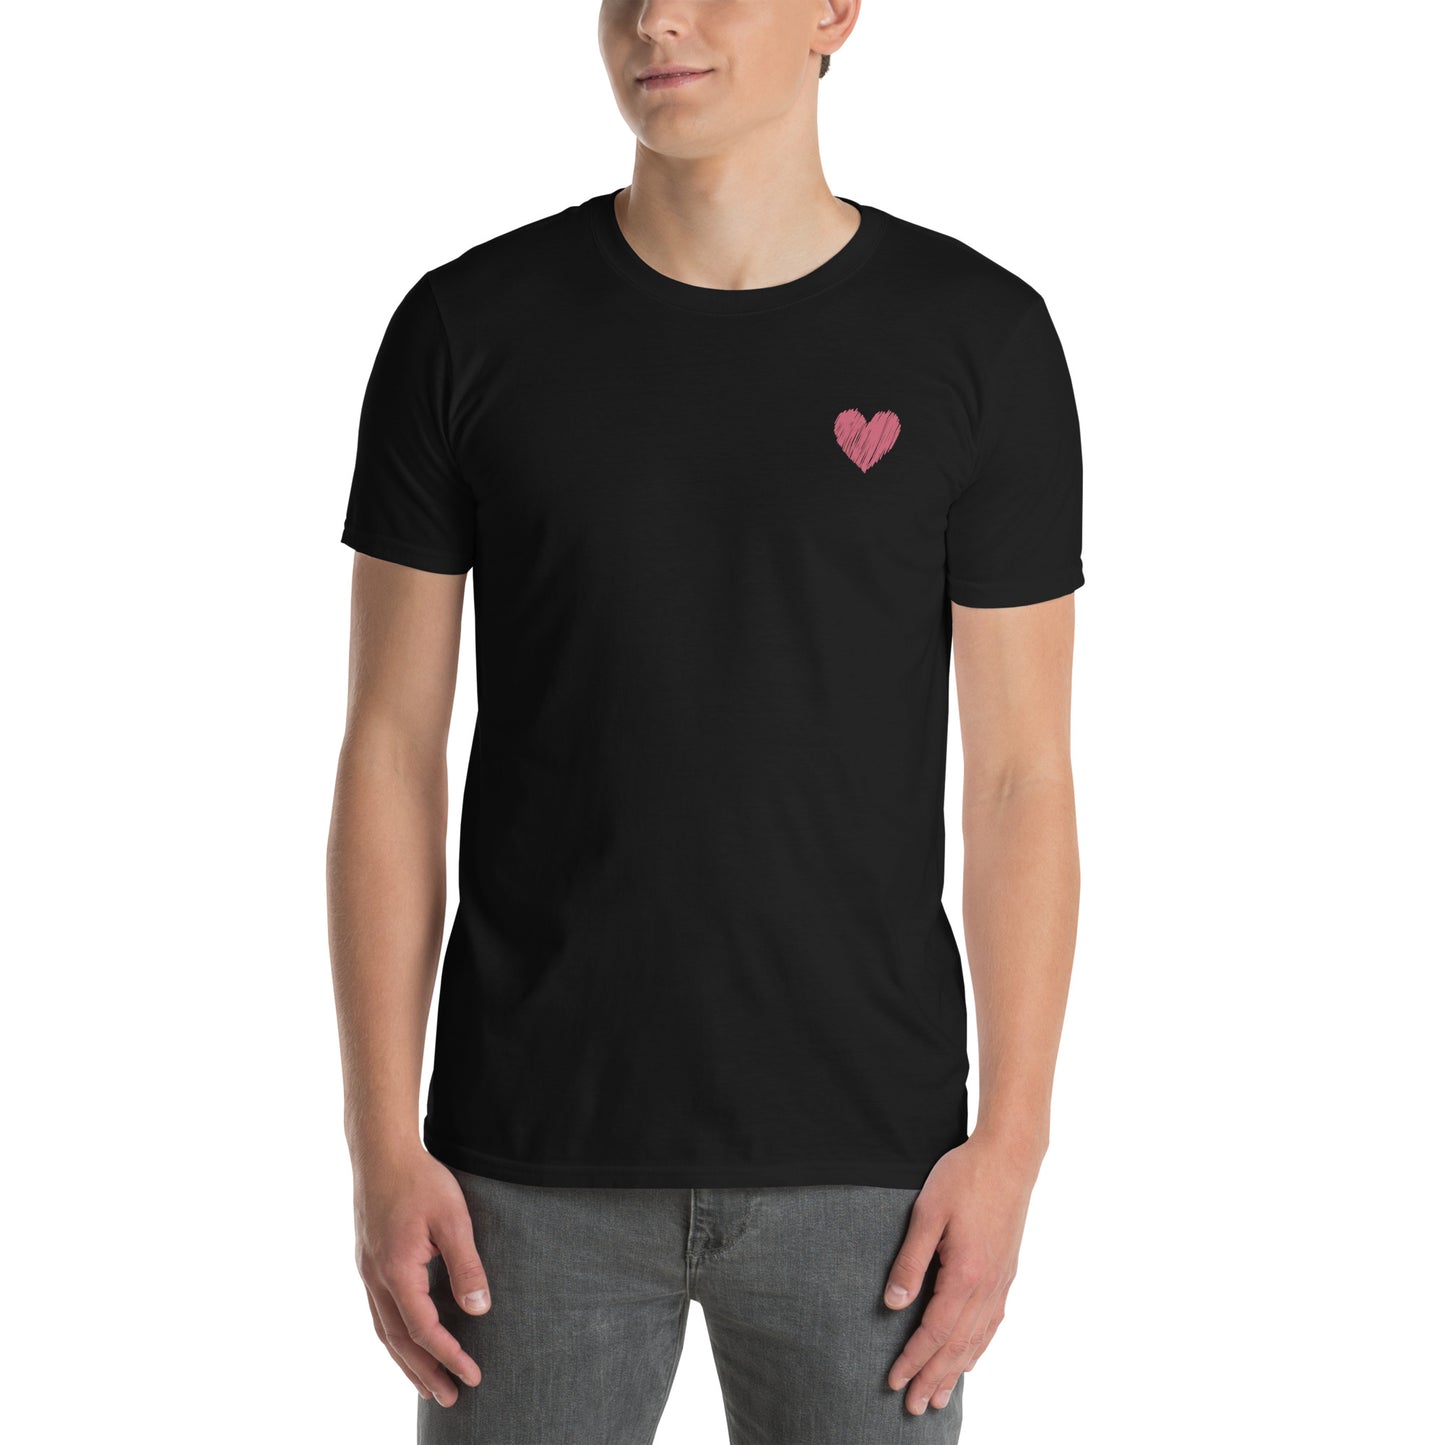 Unisex marškinėliai: Rožinė širdelė